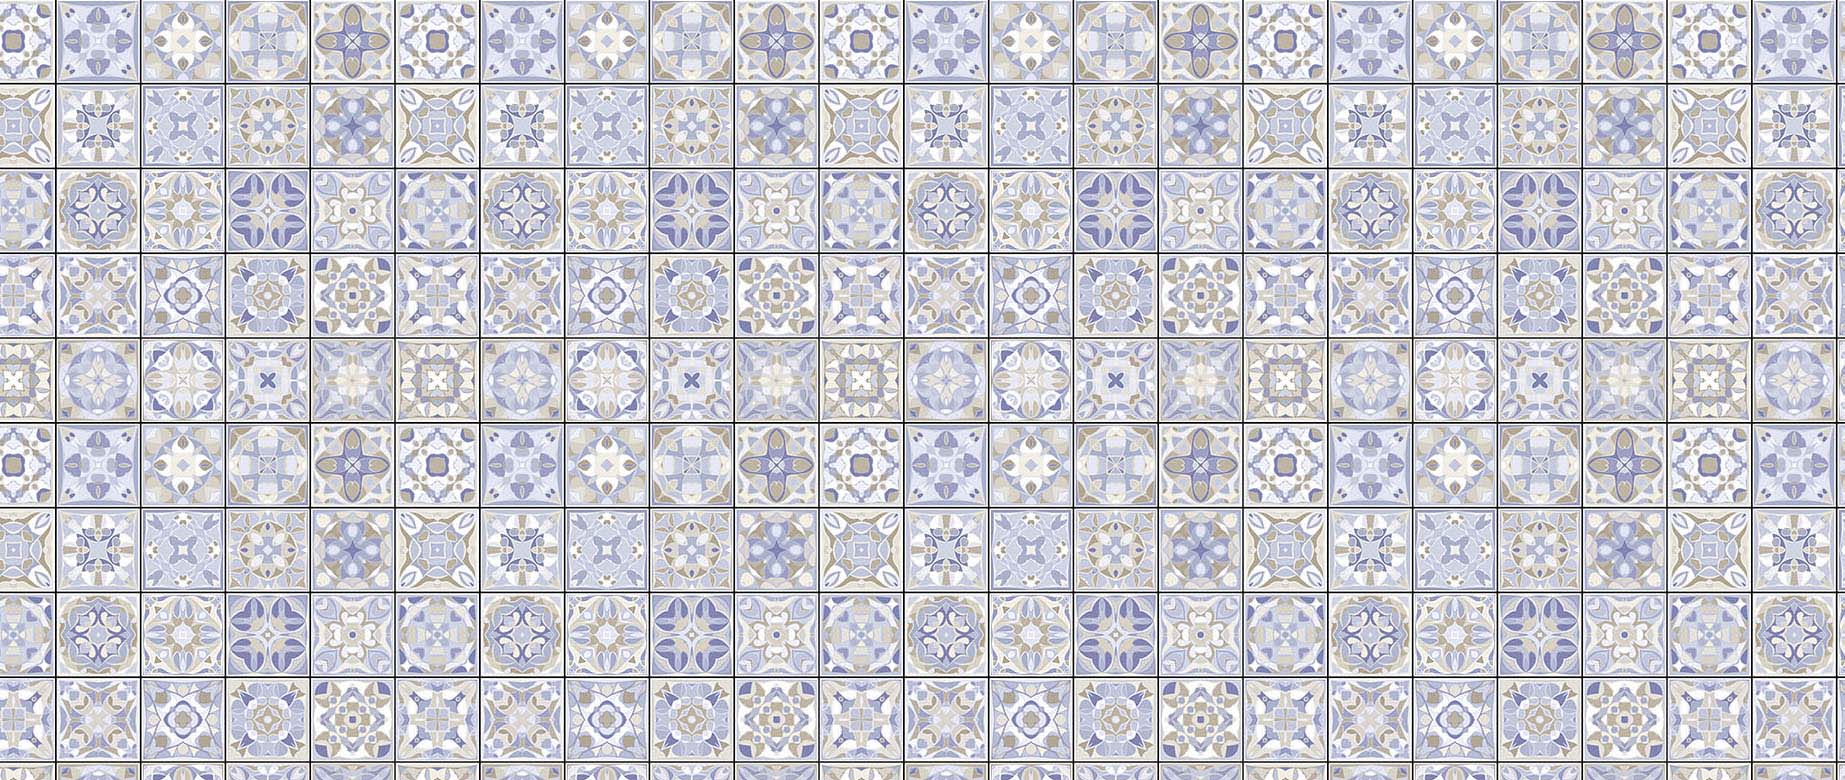 white-purple-mosaic-geometric-tile-wallpaper-view